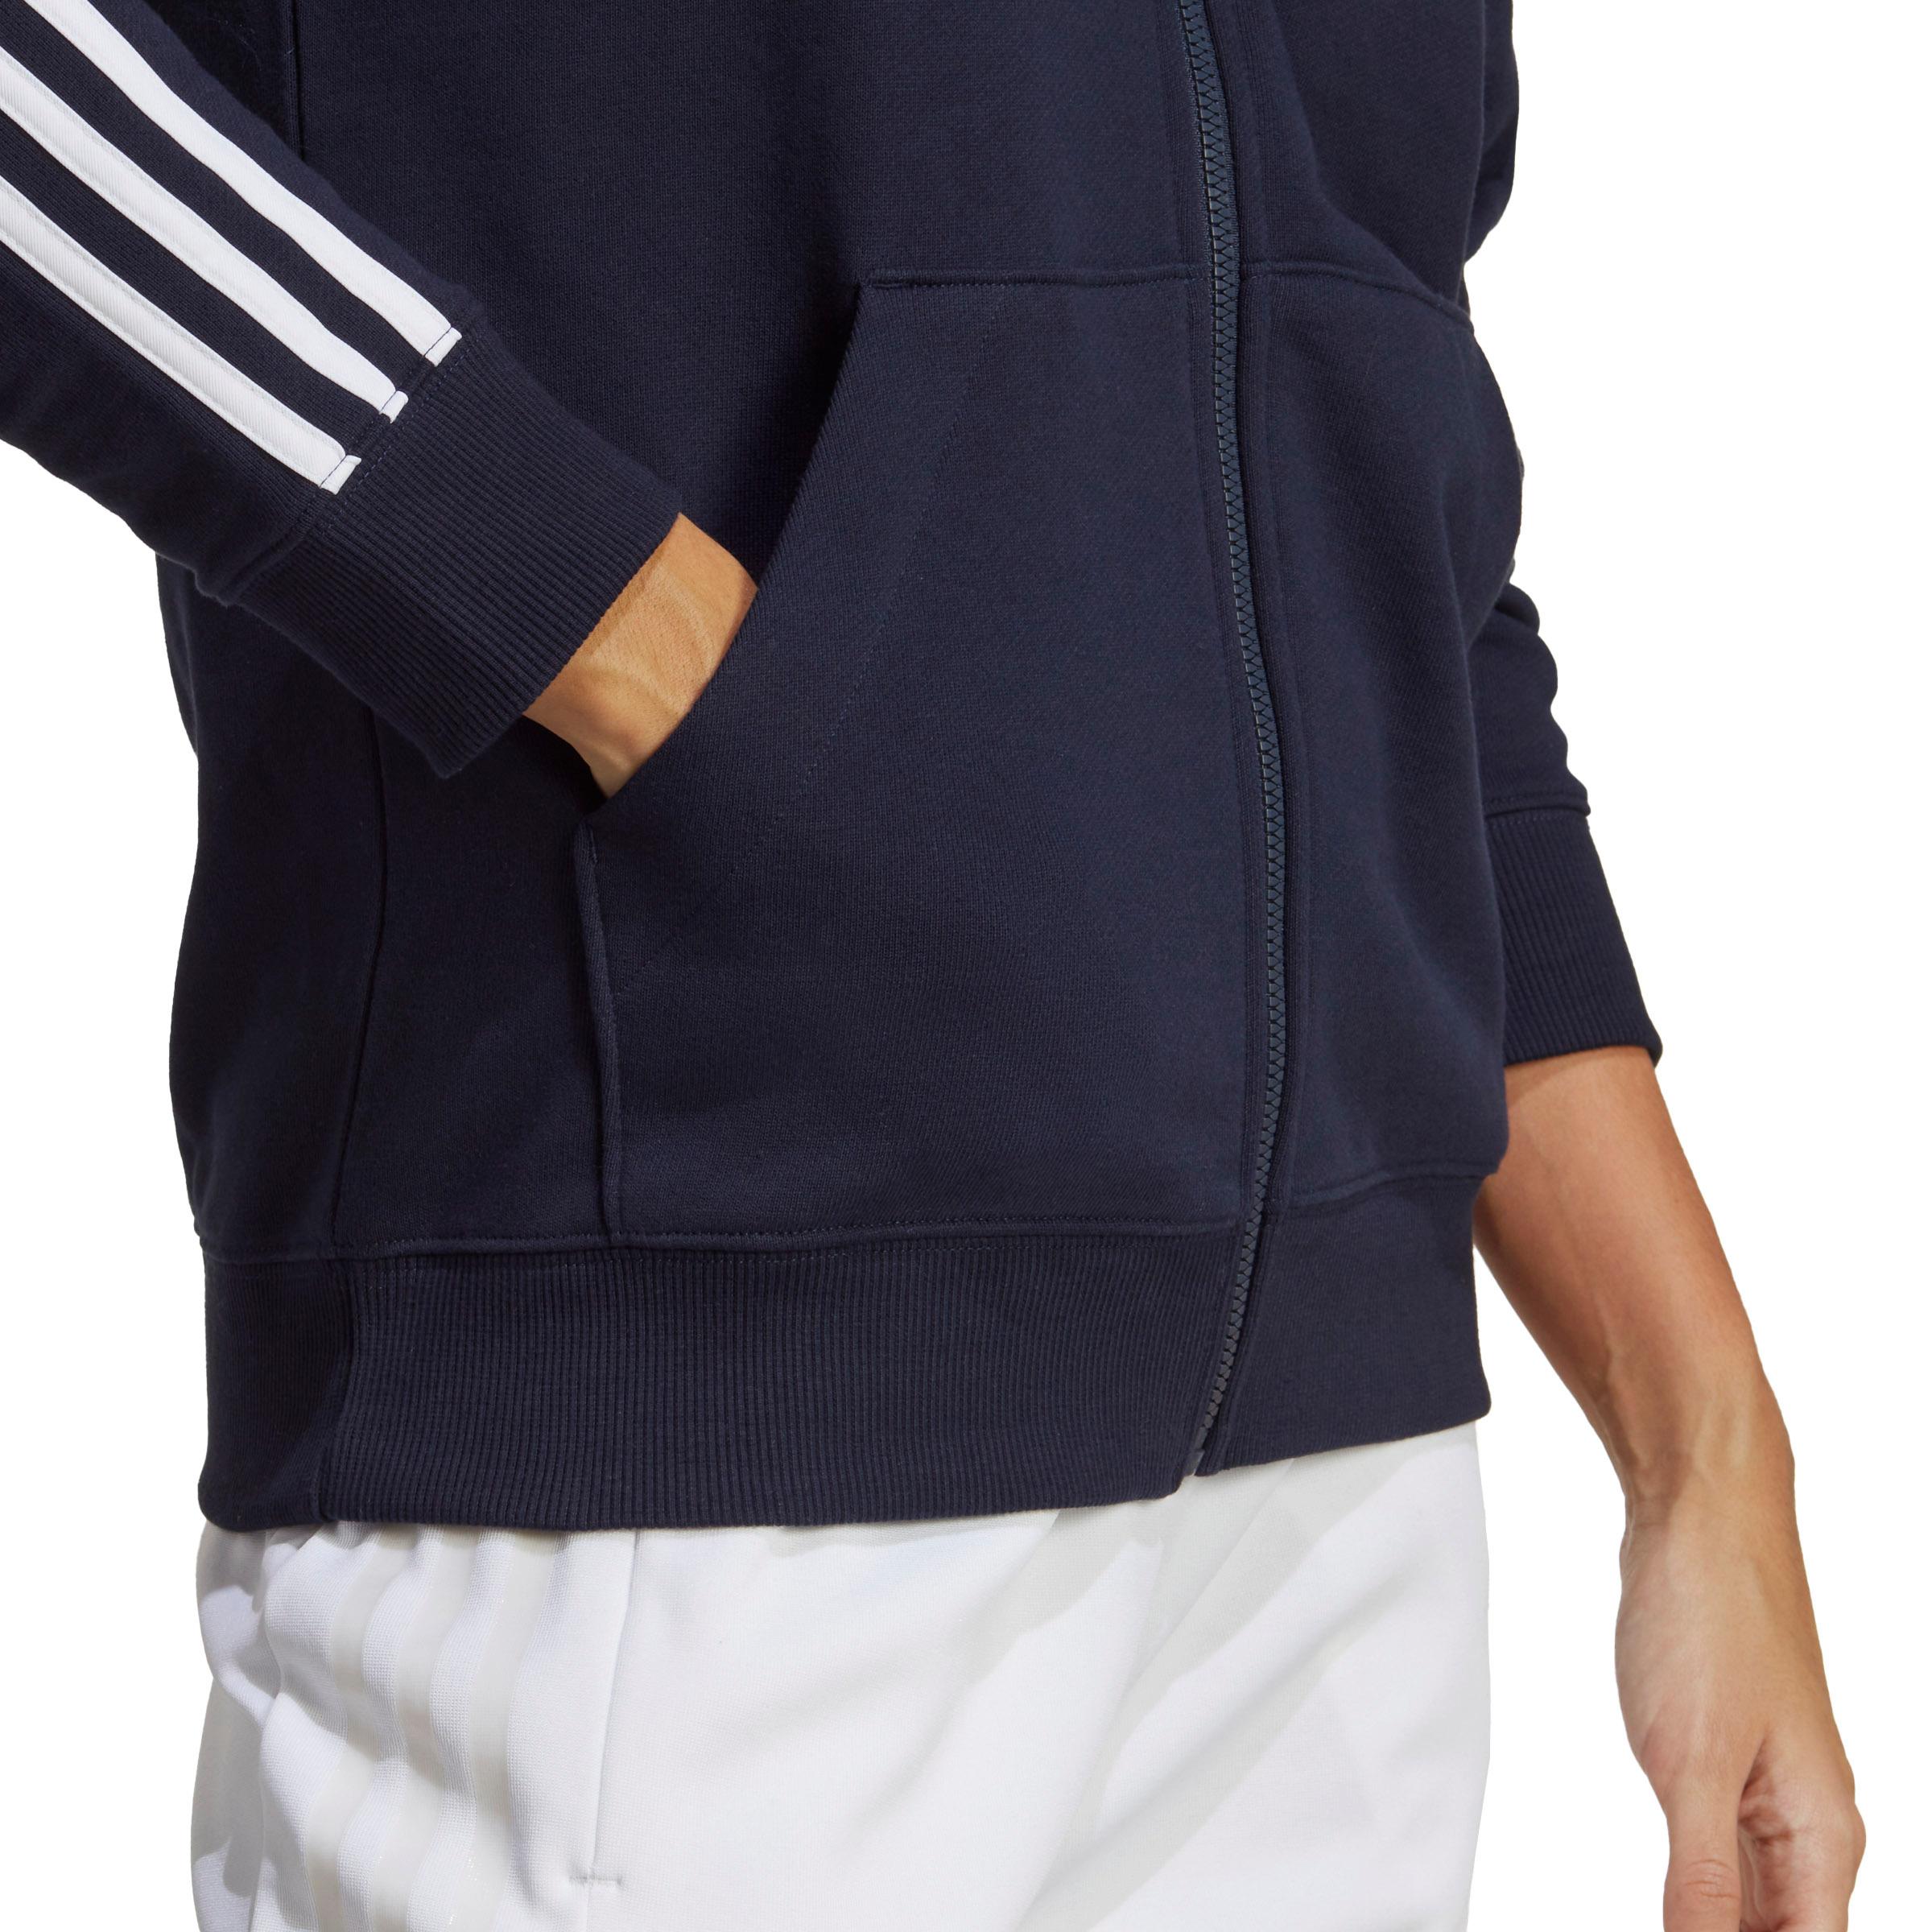 Adidas ESSENTIALS 3-STREIFEN FRENCH TERRY Kapuzenjacke Damen legink-white  im Online Shop von SportScheck kaufen